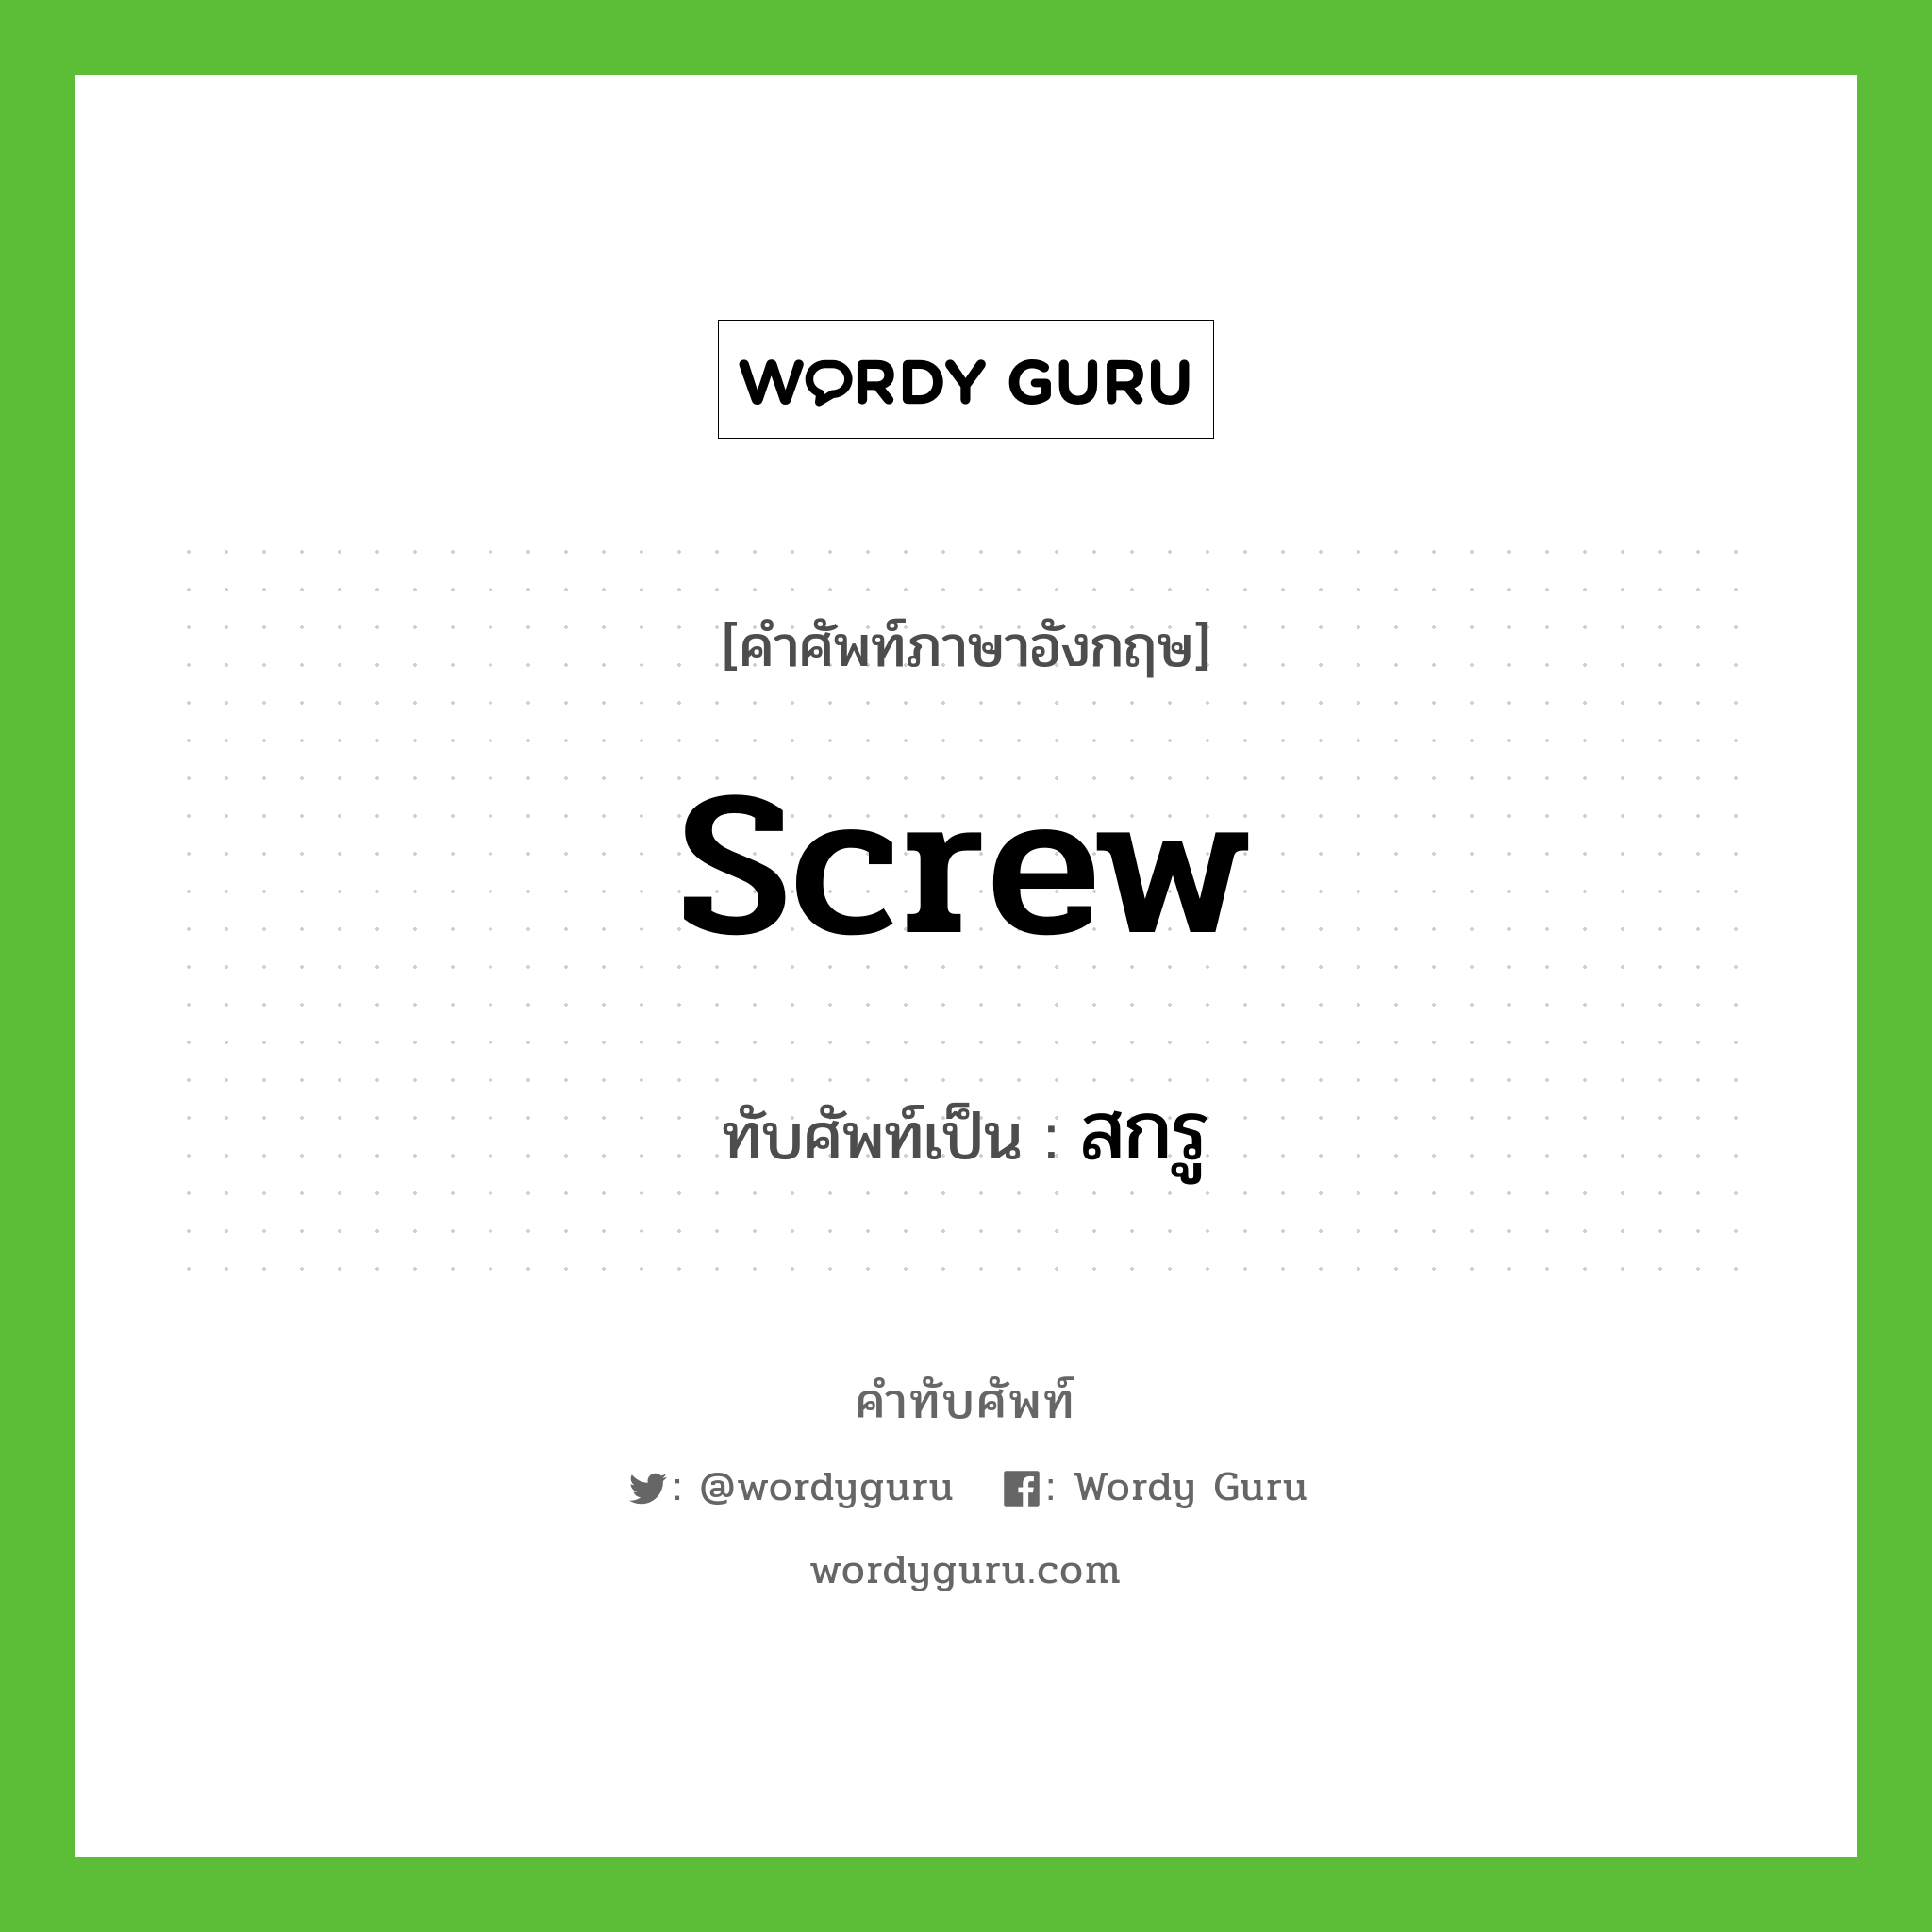 screw เขียนเป็นคำไทยว่าอะไร?, คำศัพท์ภาษาอังกฤษ screw ทับศัพท์เป็น สกรู